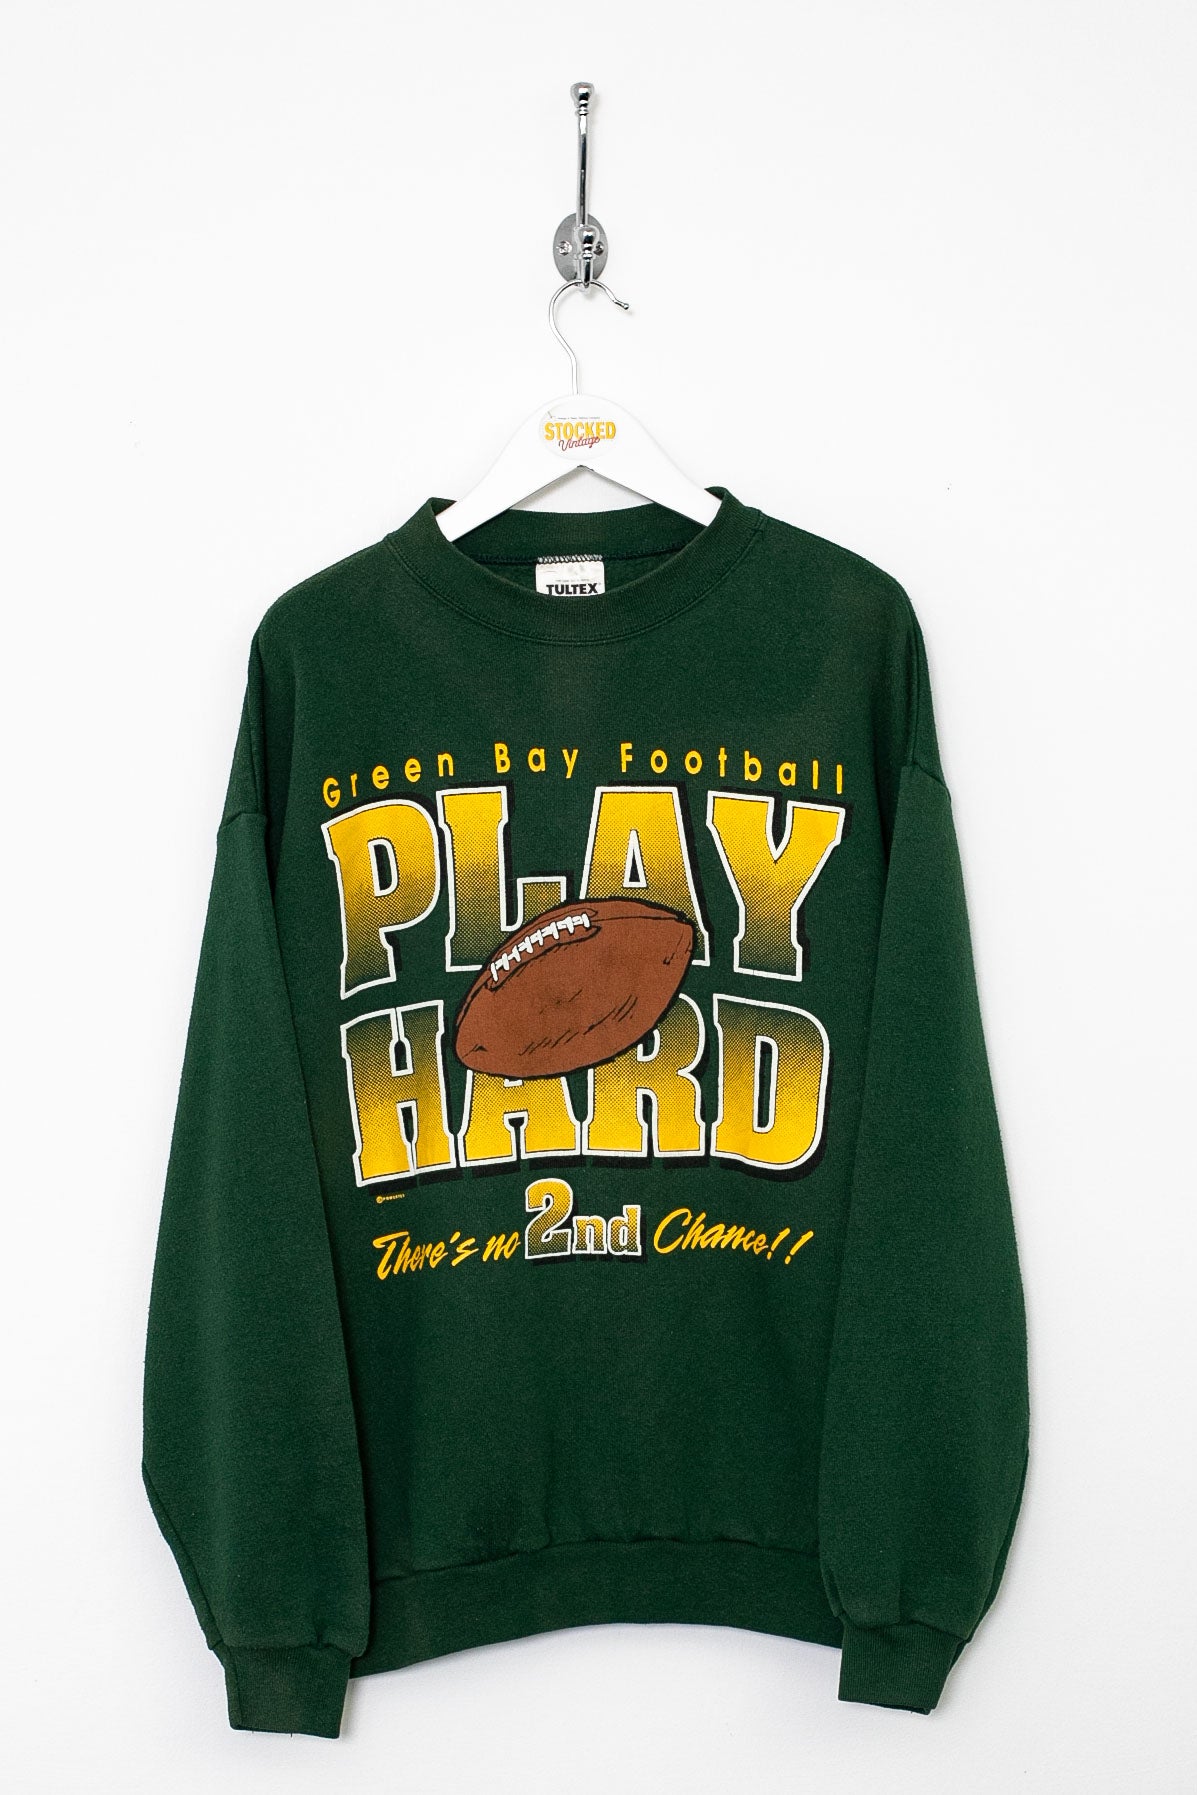 90s NFL Green Bay Packers Sweatshirt (S)